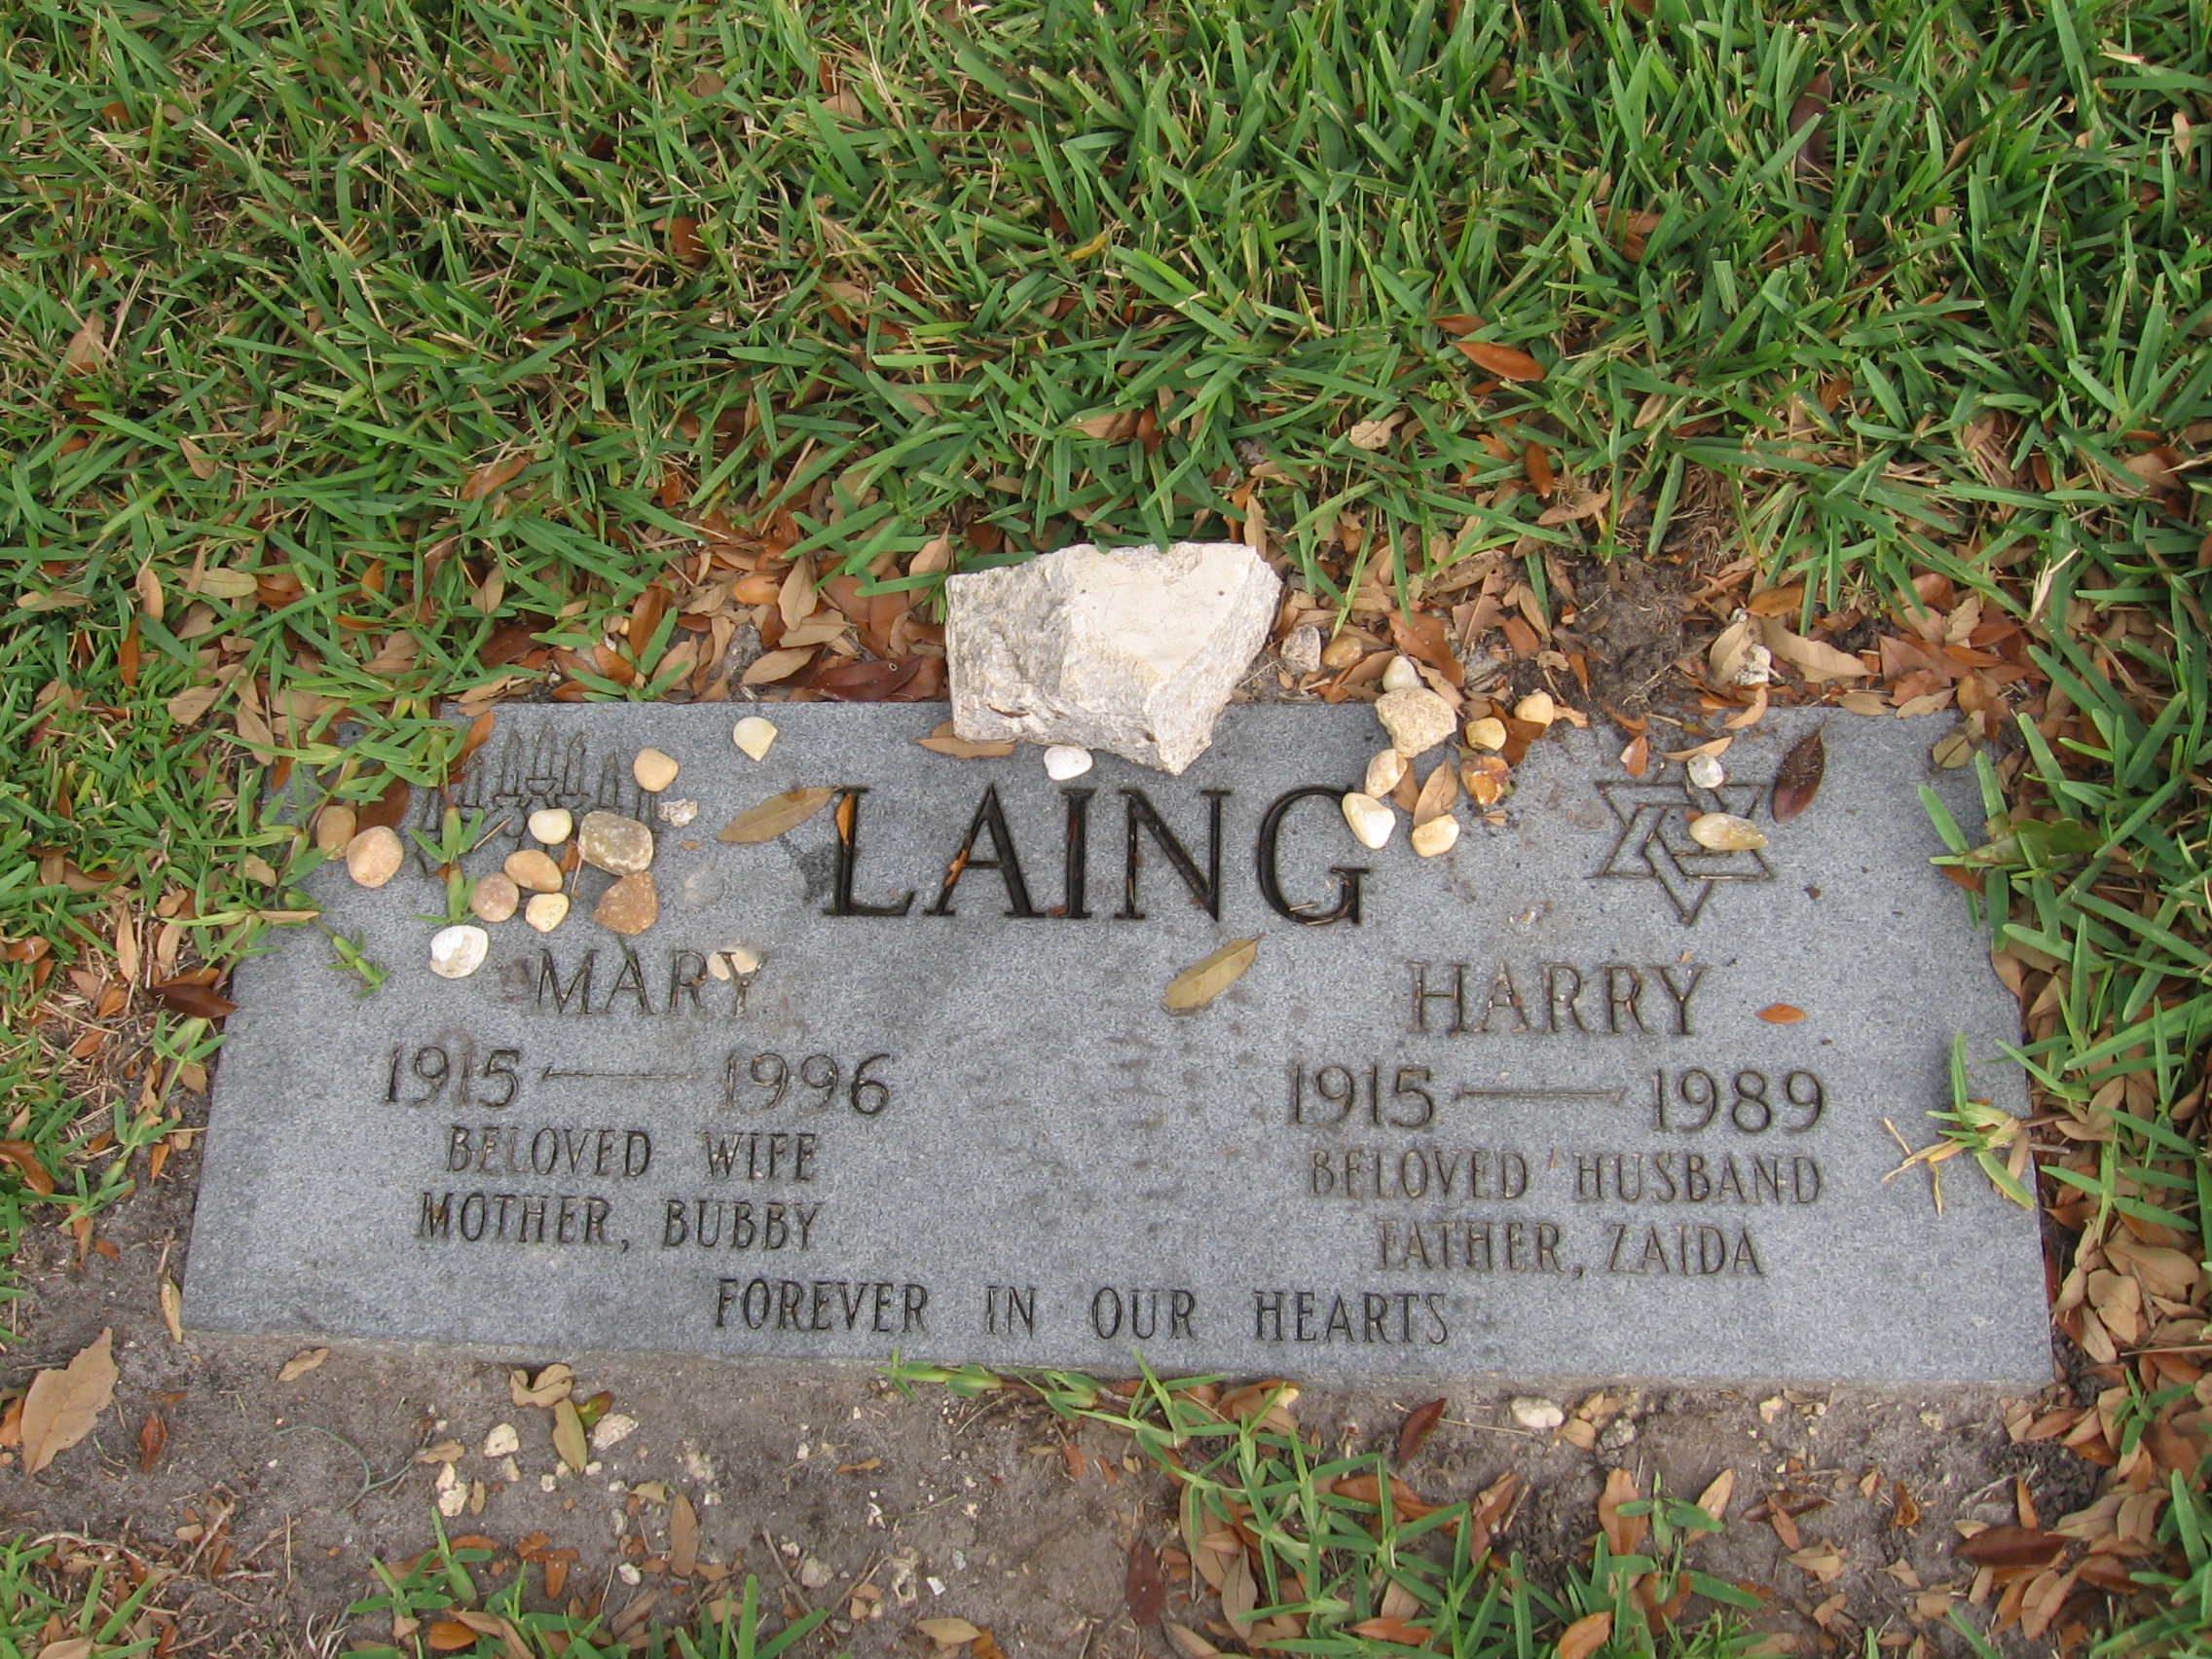 Mary Laing